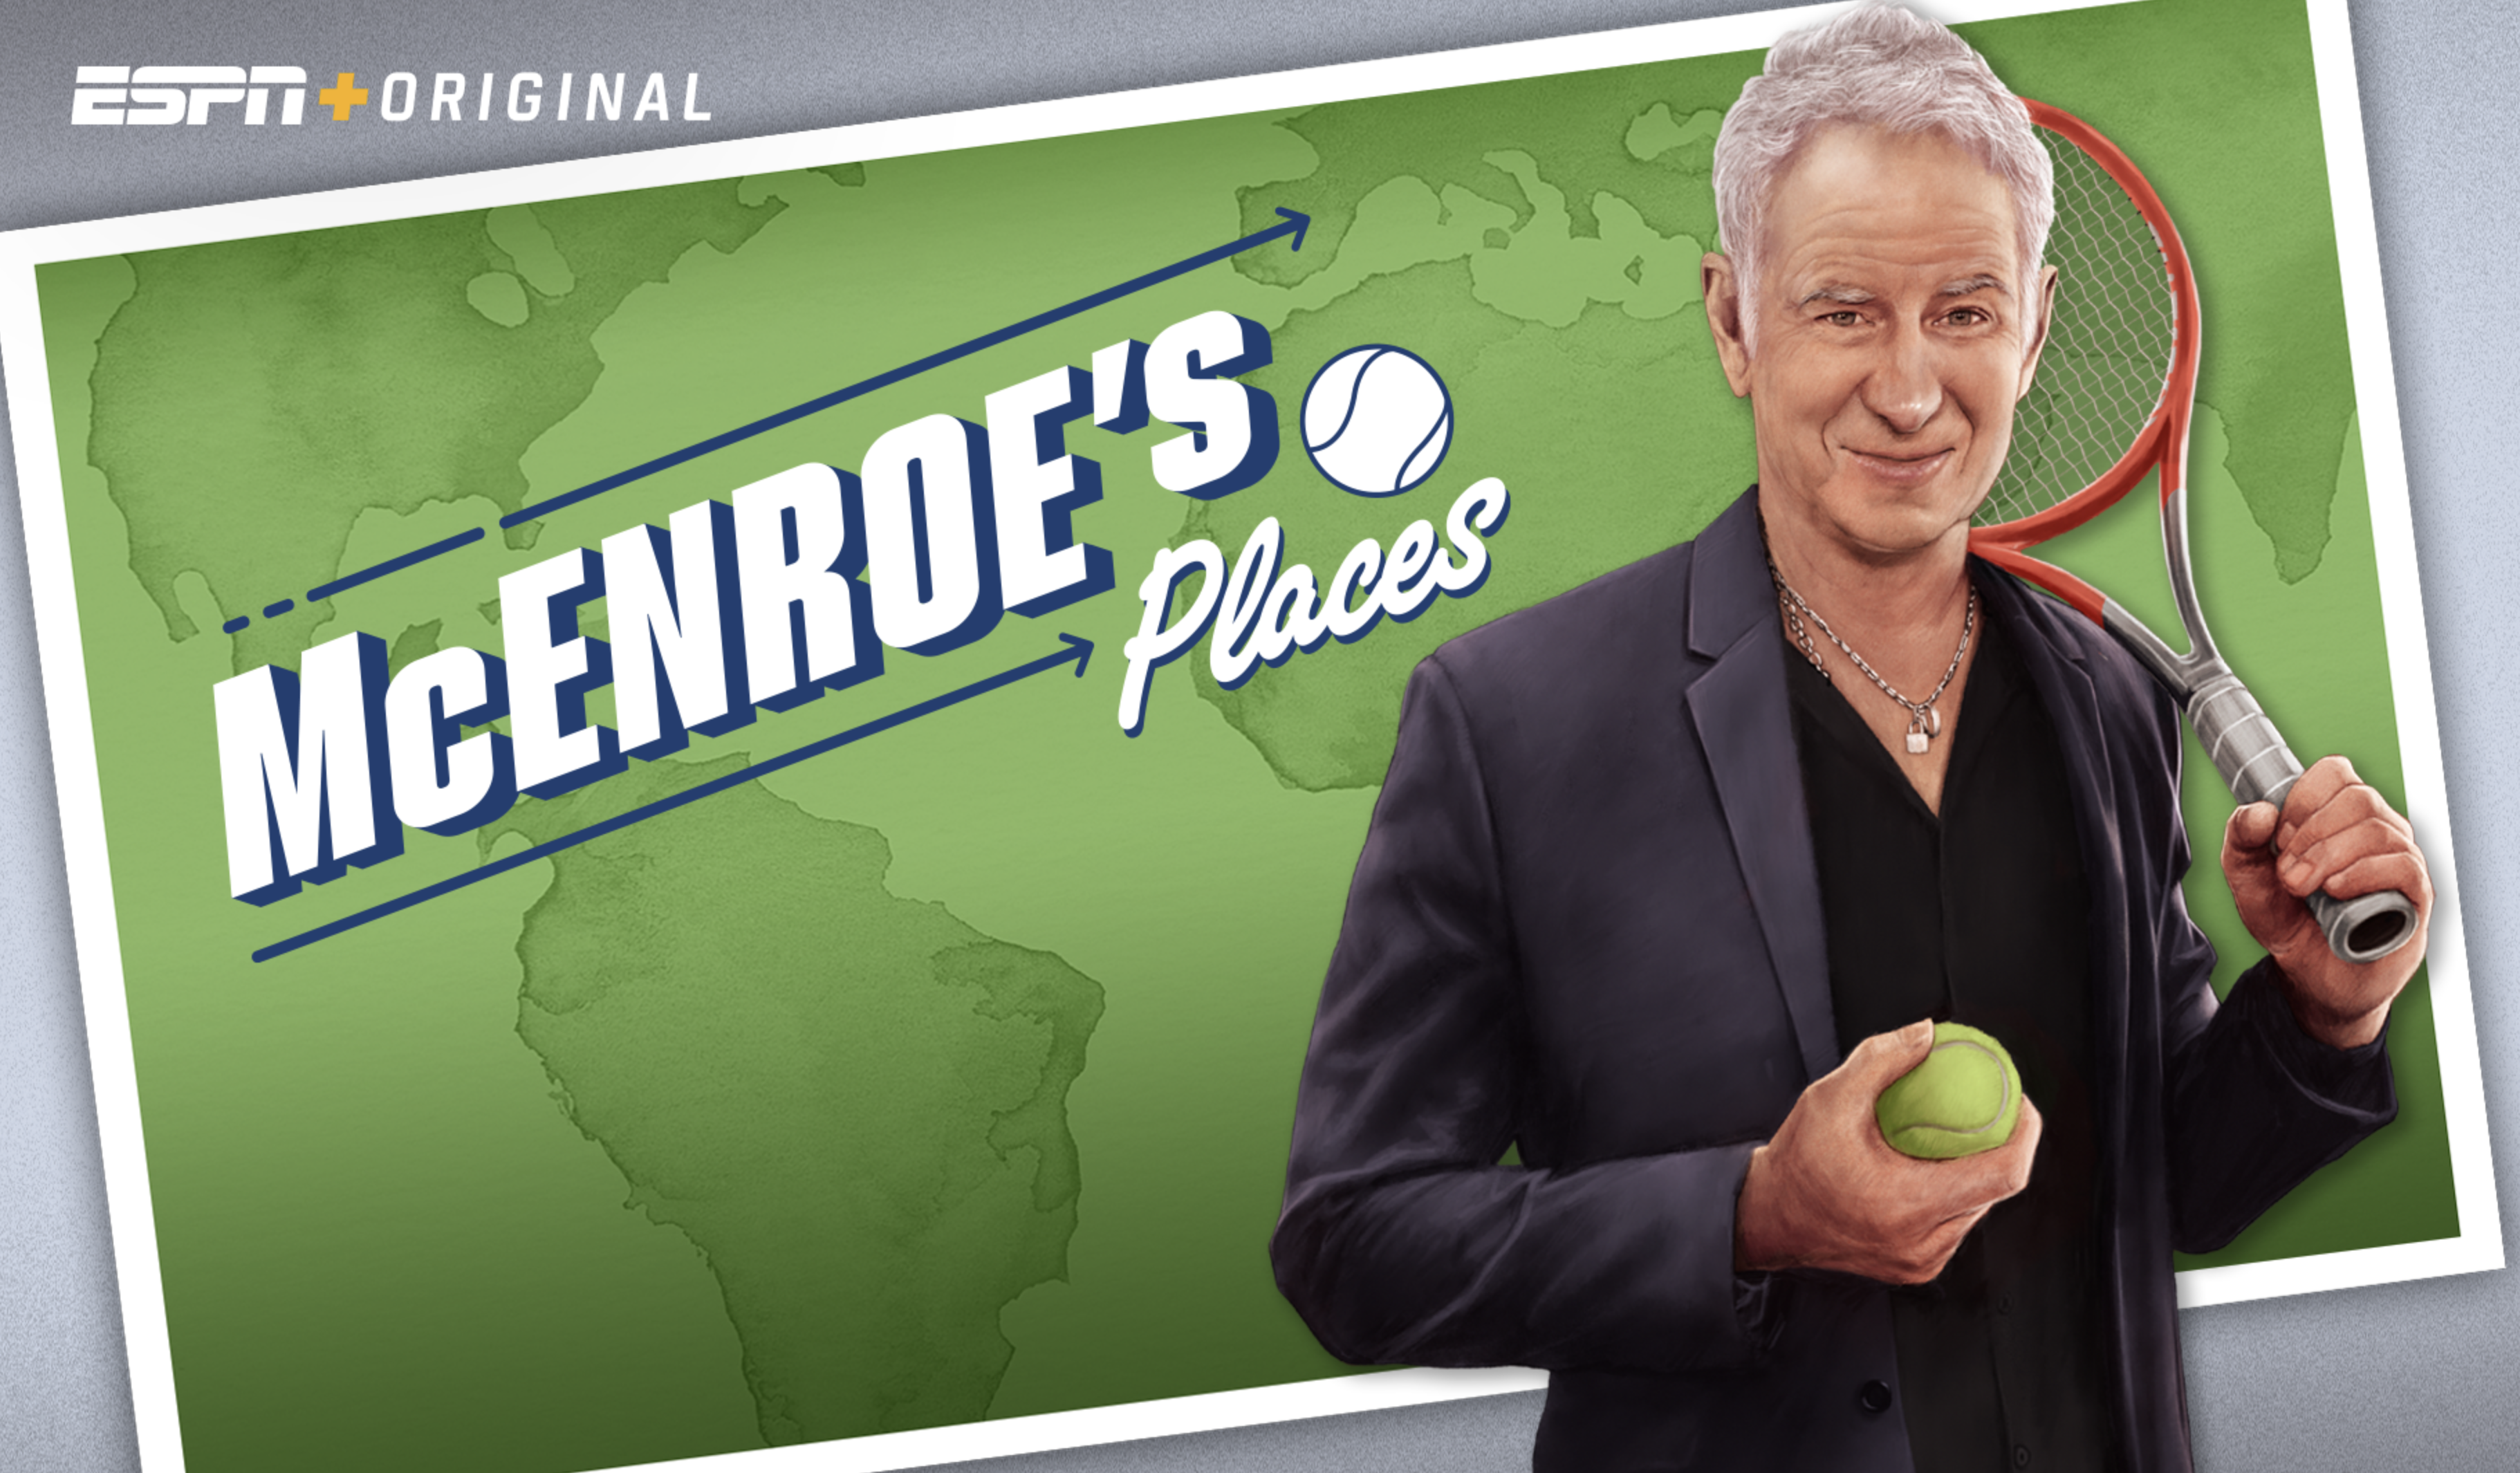 Lo más hilarante del tenis vintage llega con McEnroe’s Places, solo por ESPN+